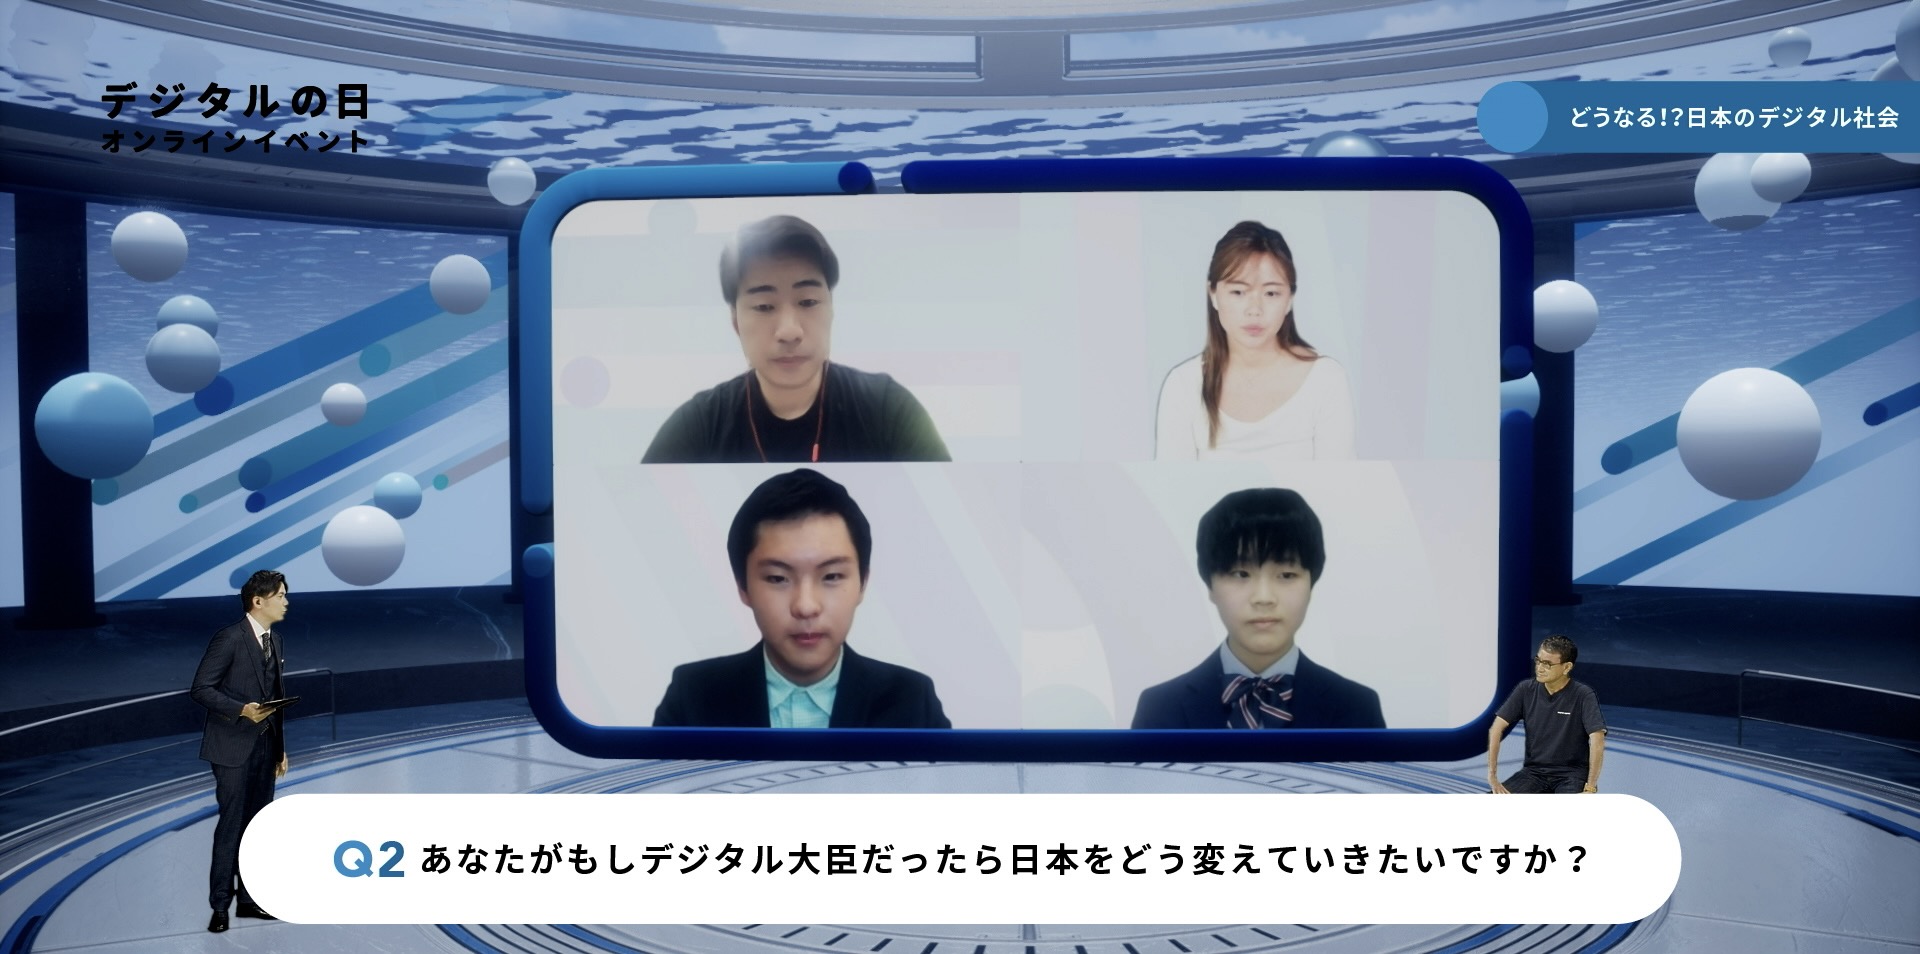 「どうなる！？日本のデジタル社会」イベント会場の様子。左側に司会者が立ち、右側に河野大臣が座っている。ステージ中央に大きなモニターが設置され、4人の出演者がオンラインで参加している様子が映されている。 下部テロップには「Q2 あなたがもしデジタル大臣だったら日本をどう変えていきたいですか？」と質問が表示されている。